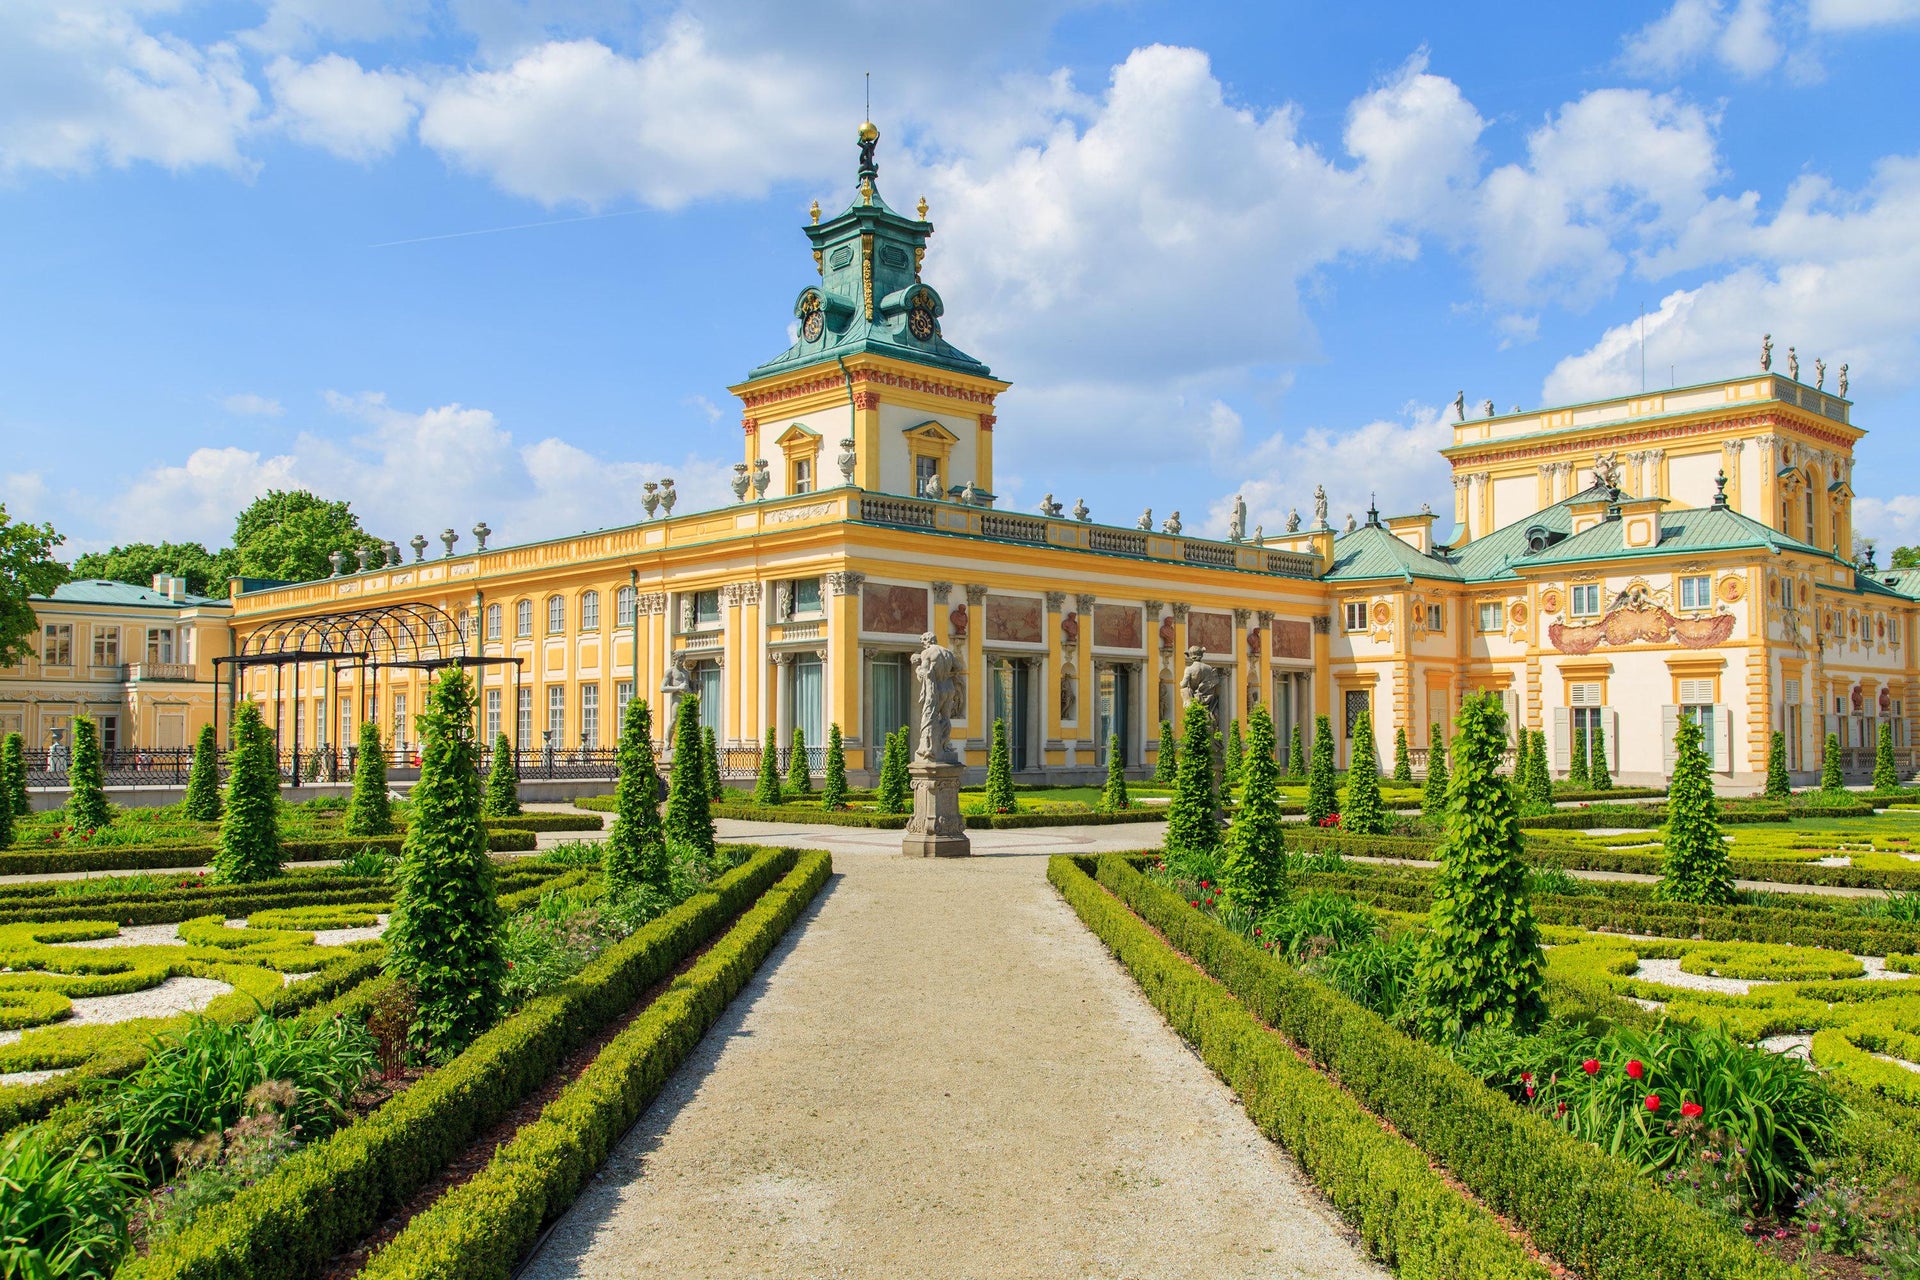 Visita guiada pelo Palácio de Wilanów